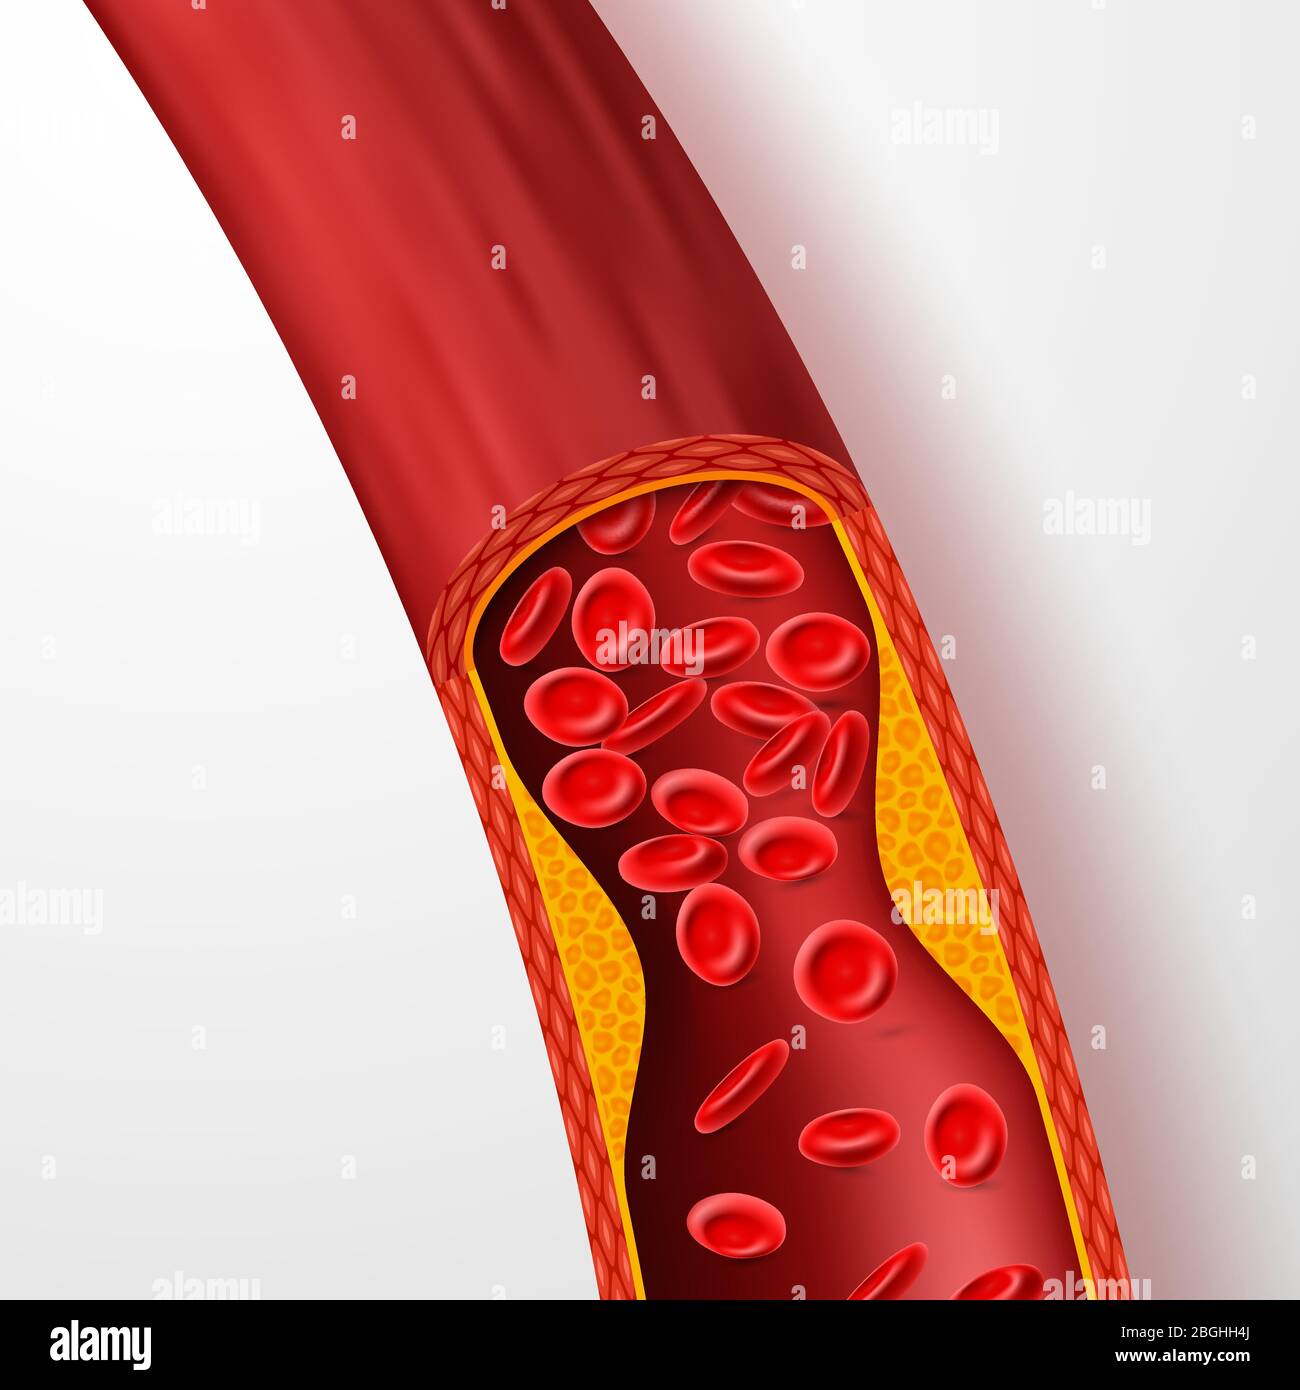 Vaso sanguigno bloccato, arteria con trombi di colesterolo. illustrazione vettoriale della vena 3d con coagulo. Sangue arterioso medico, malattia da colesterolo, circolazione di flusso bloccata Illustrazione Vettoriale